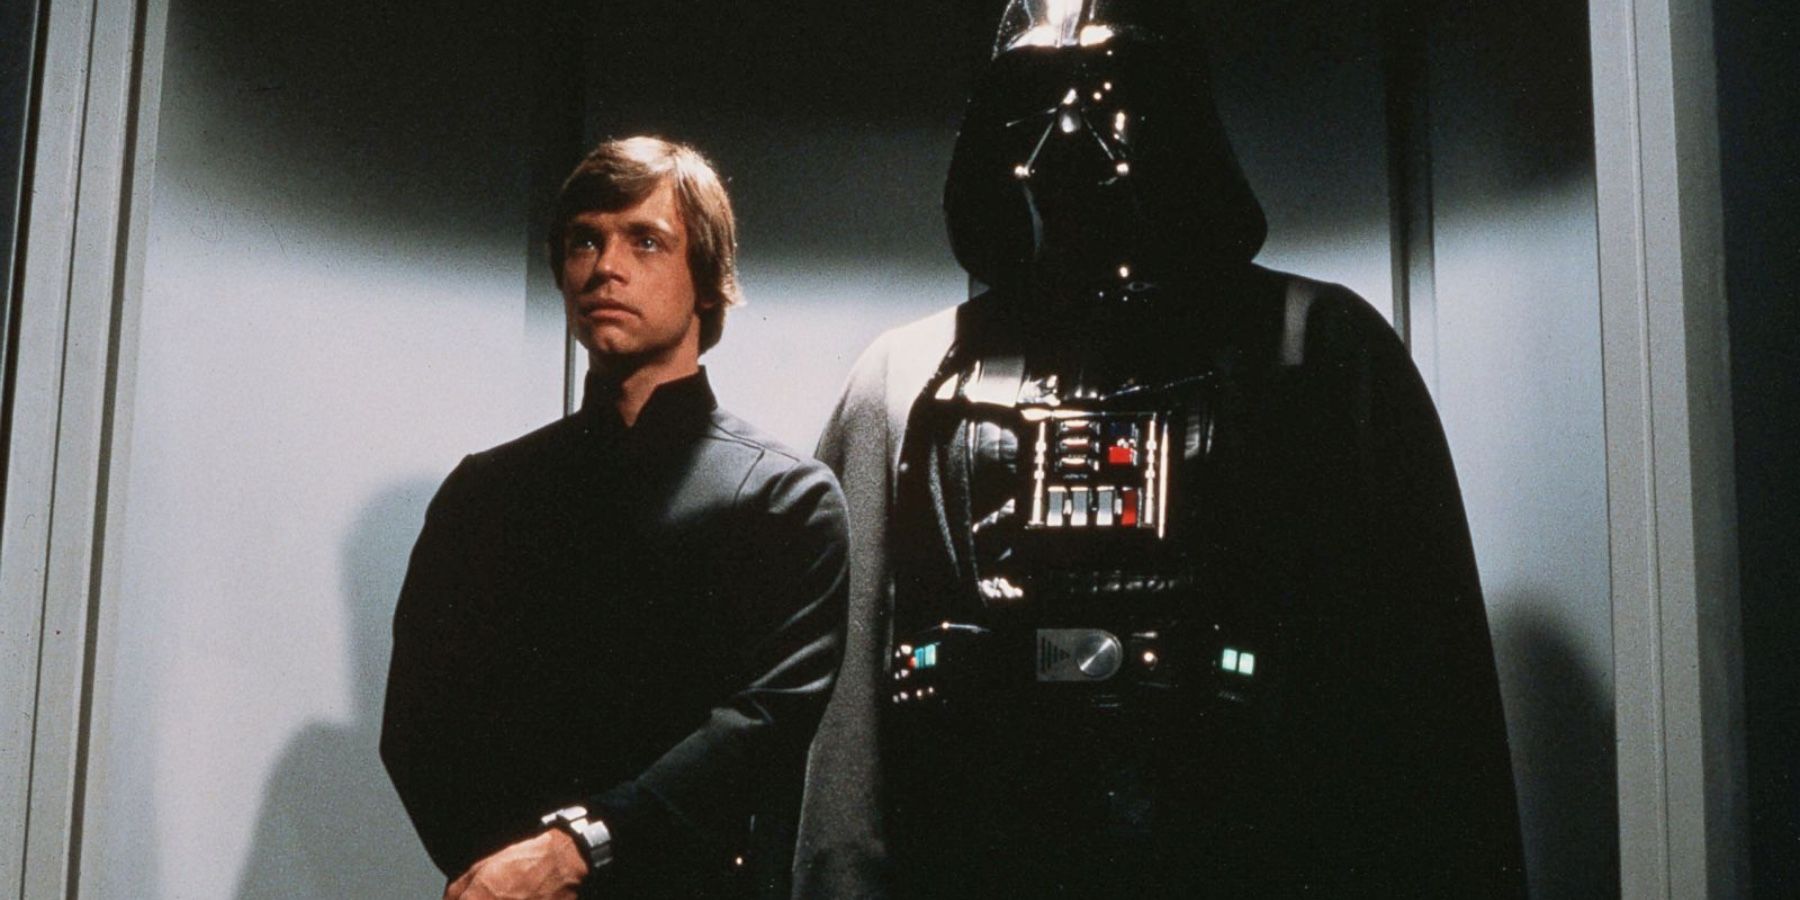 Luke-Skywalker-and-Darth-Vader-in-Star-Wars-Episode-VI-Return-of-the-Jedi